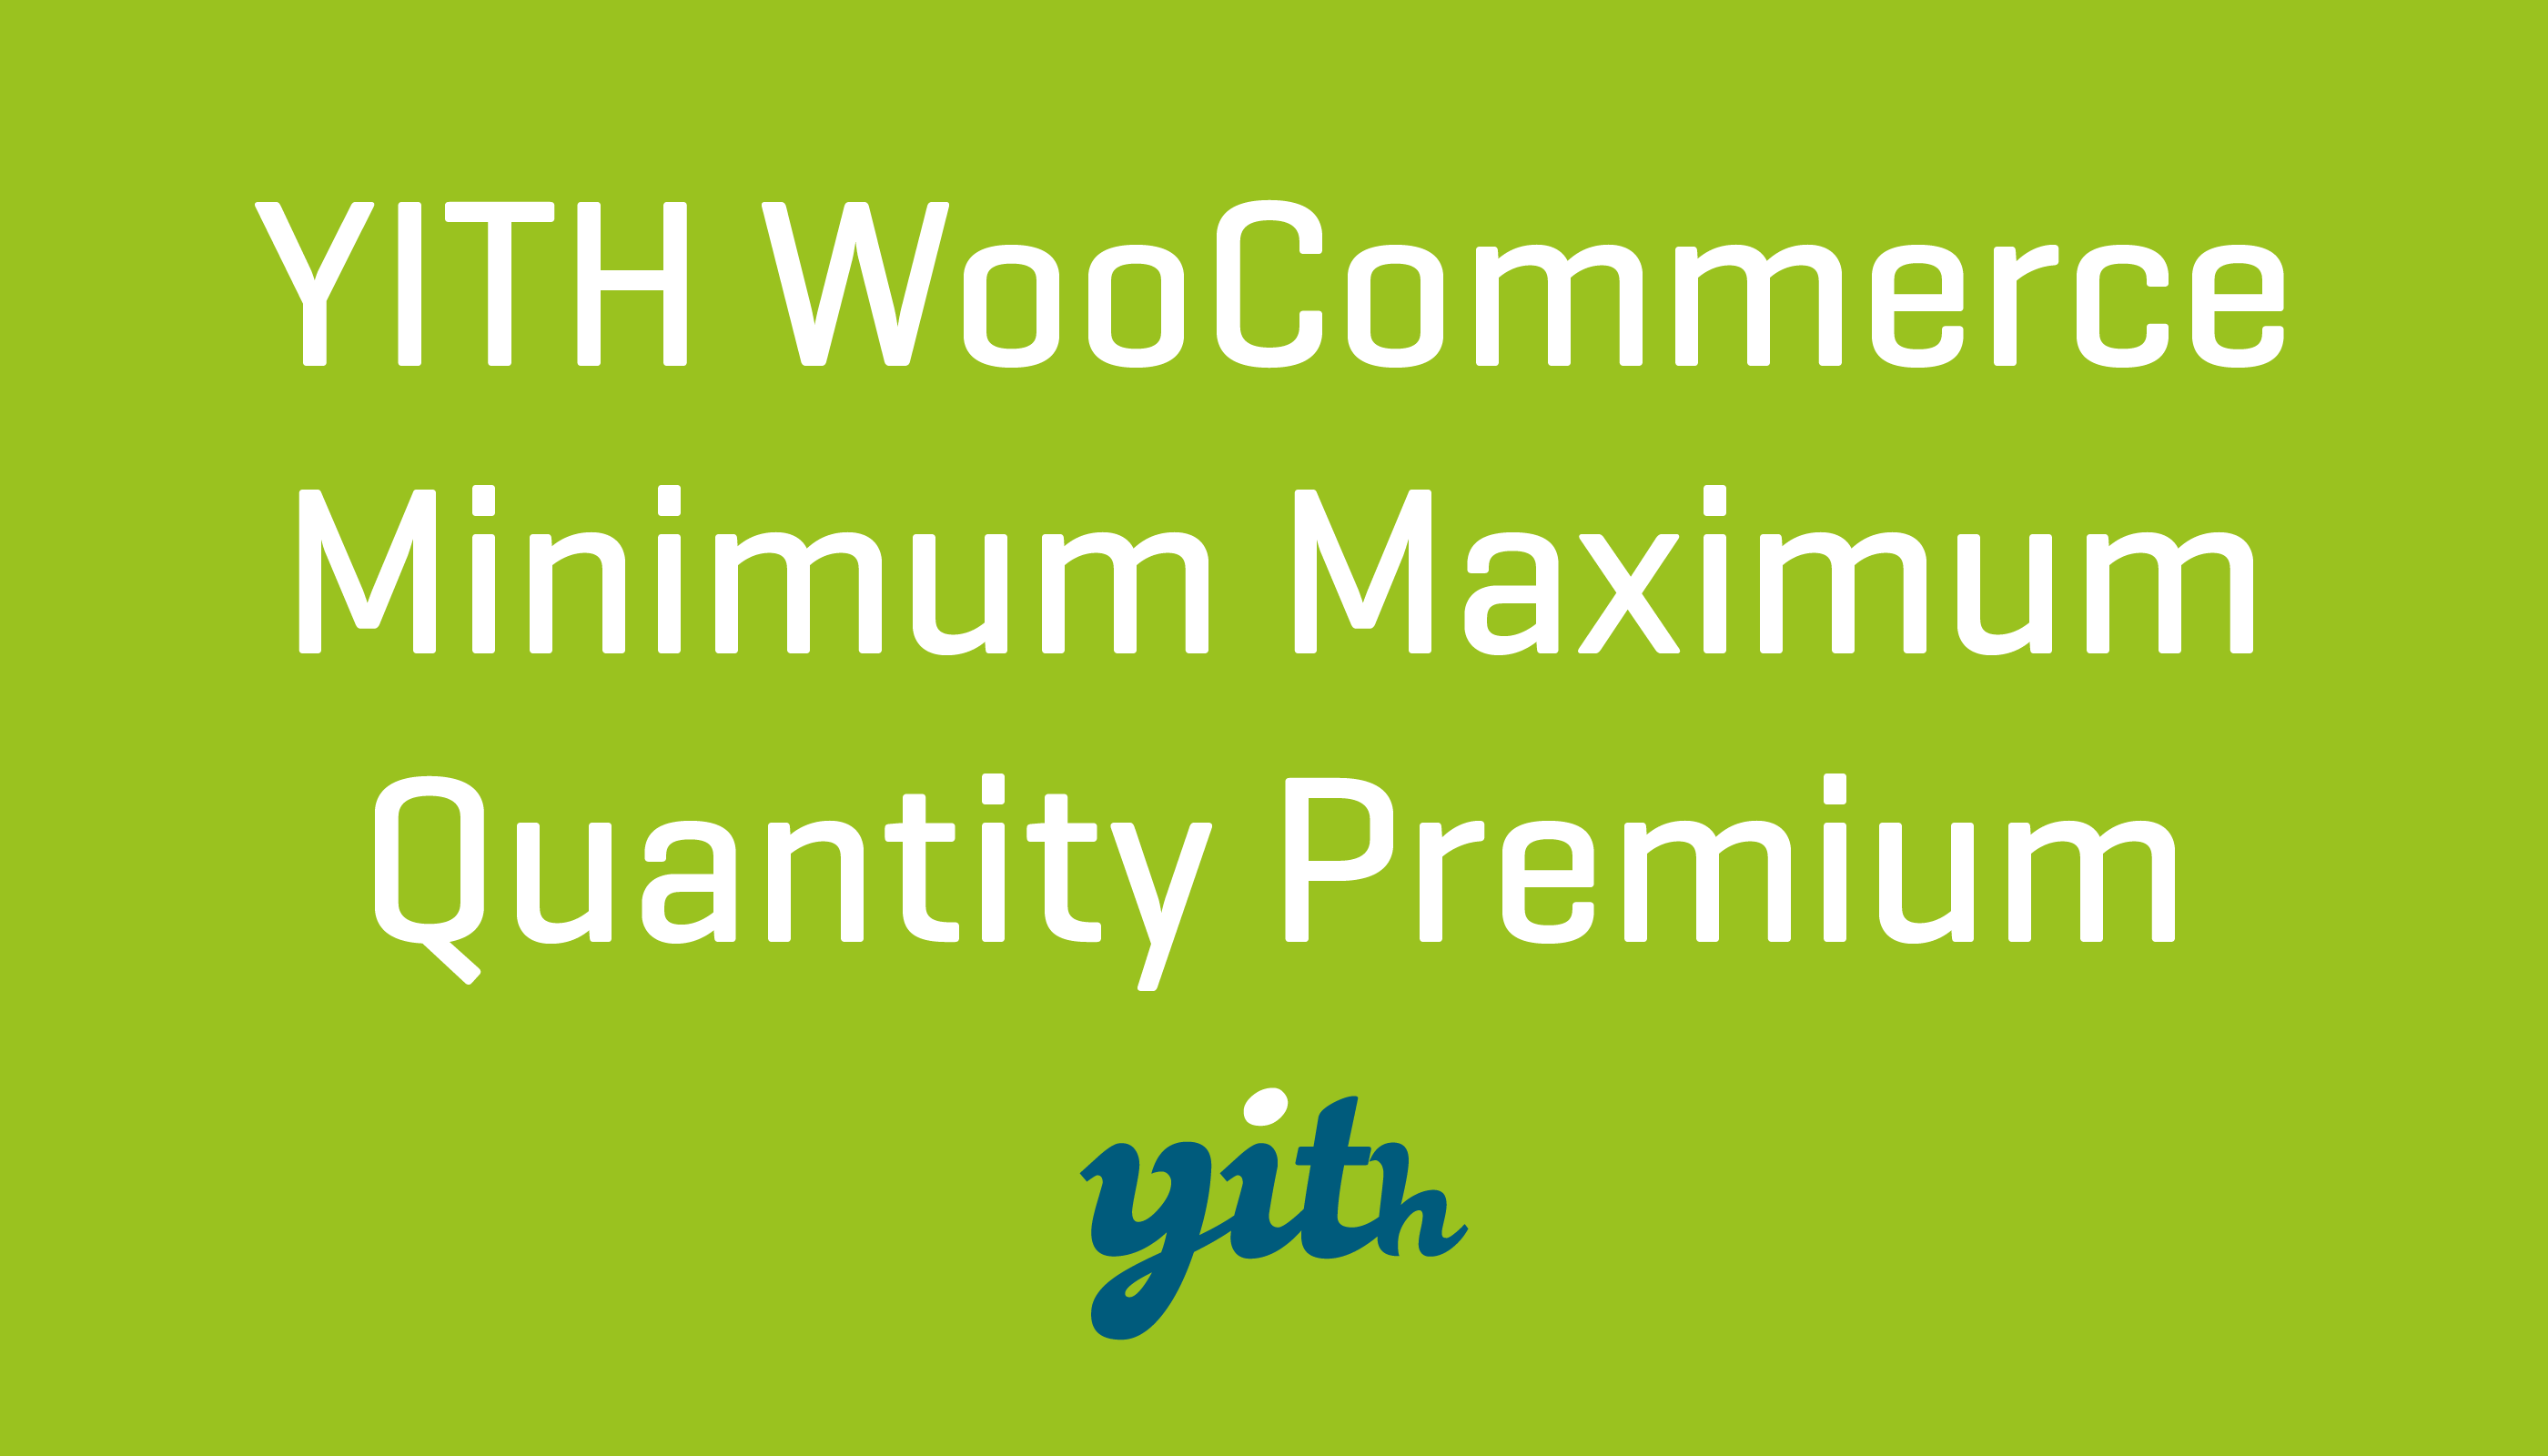 YITH Woocommerce Minimum Maximum Quantity Premium